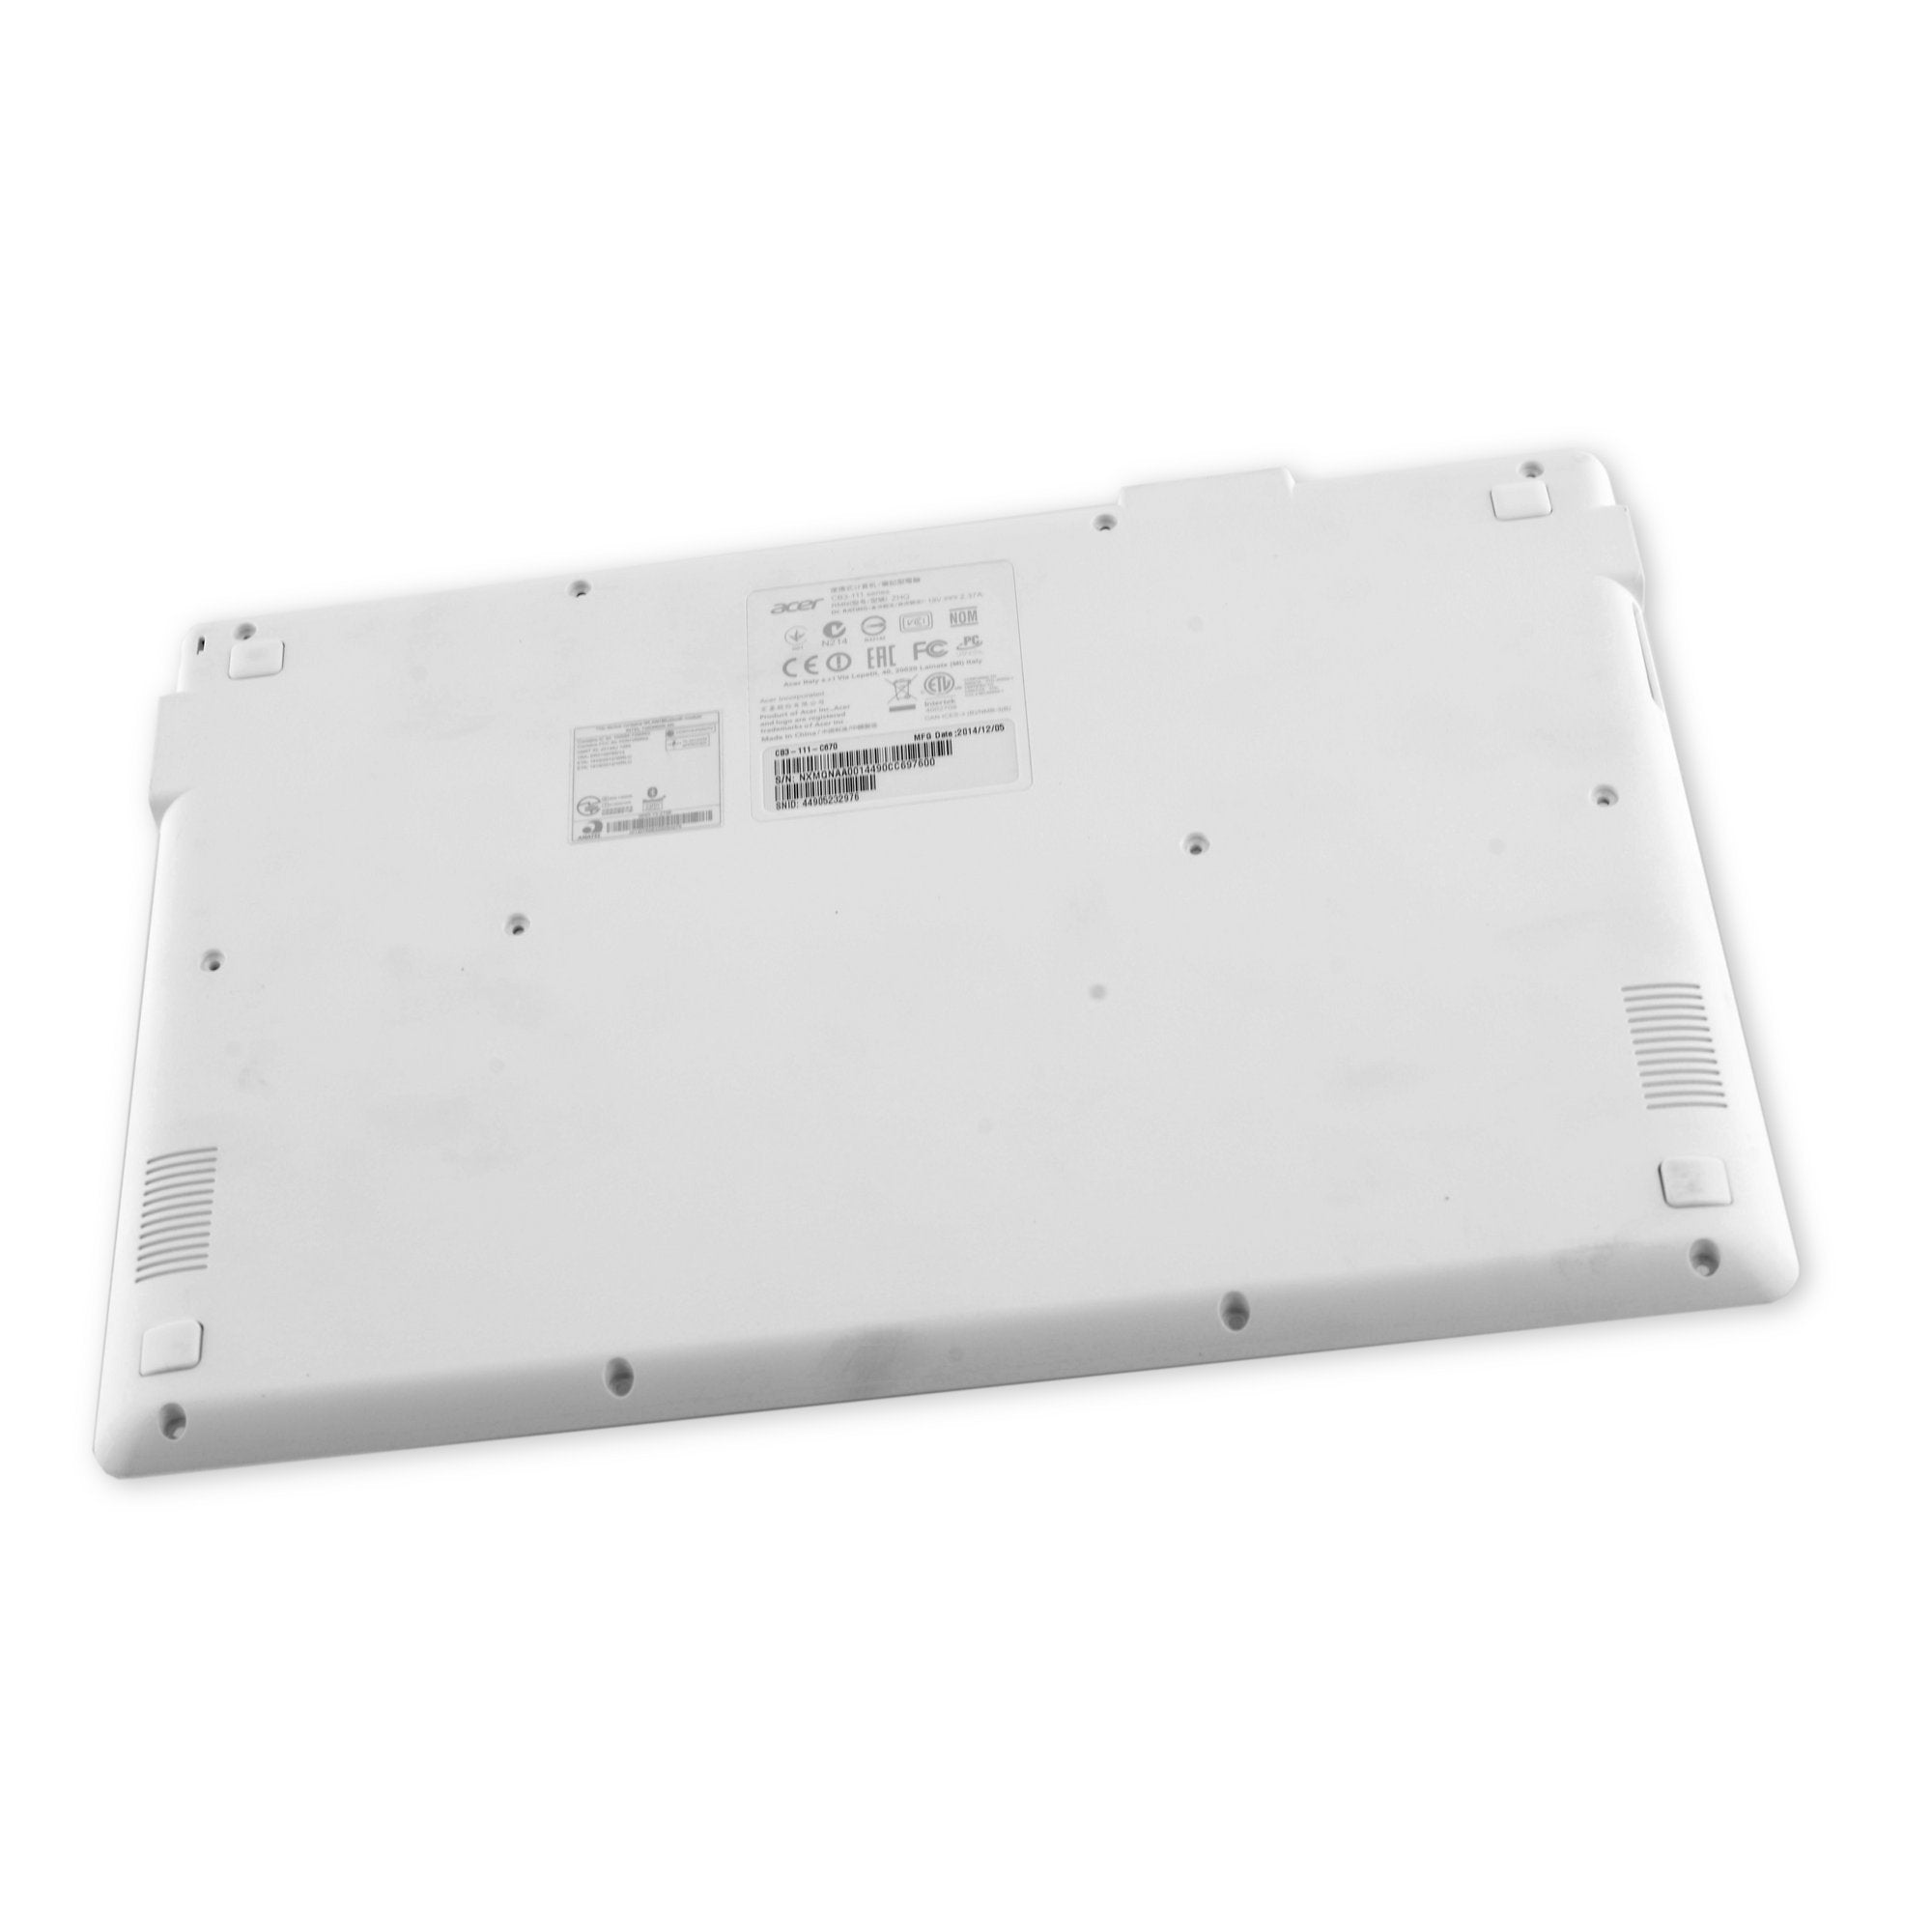 Acer Chromebook CB3-111-C670 Lower Case